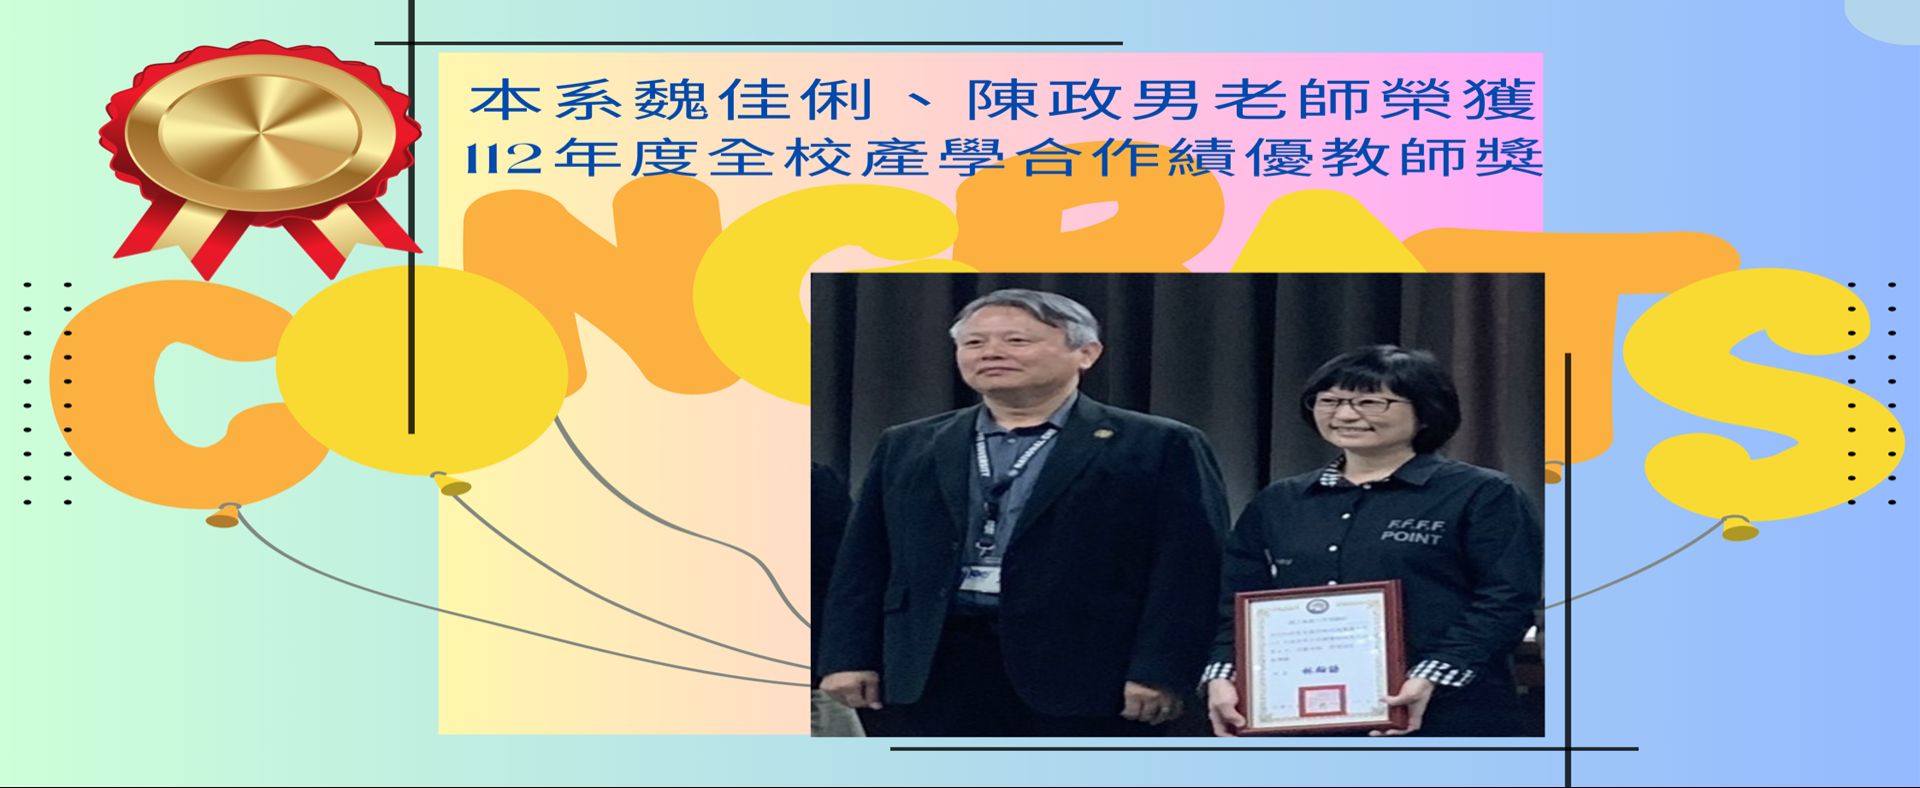 恭賀!本系魏佳俐、陳政男老師榮獲112年度全校產學合作績優教師獎